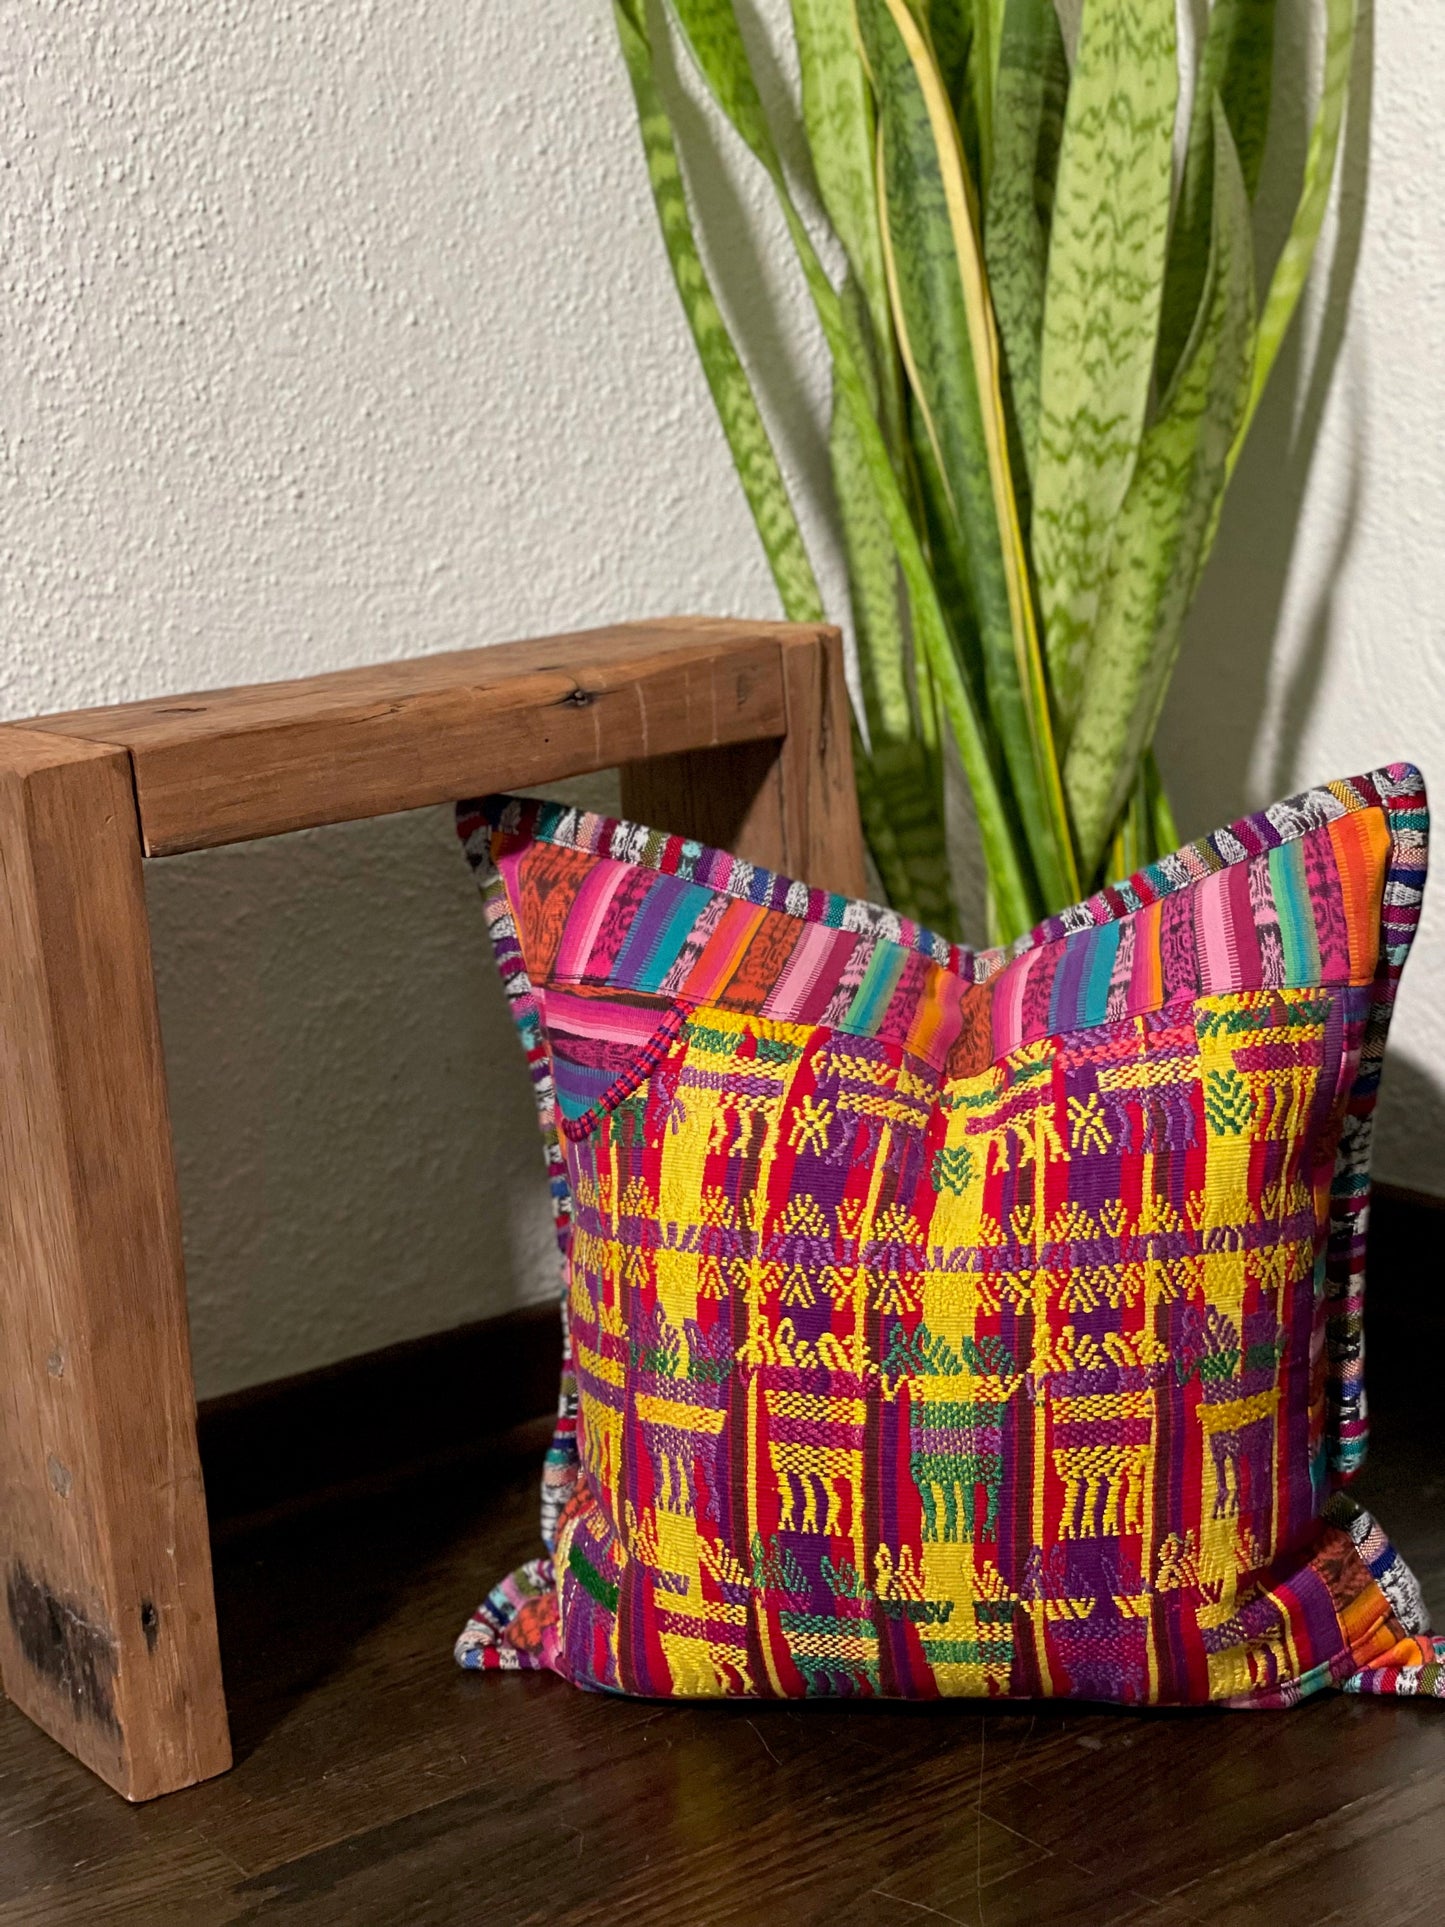 Decorative Throw pillow covers from San Juan Sacatepequez